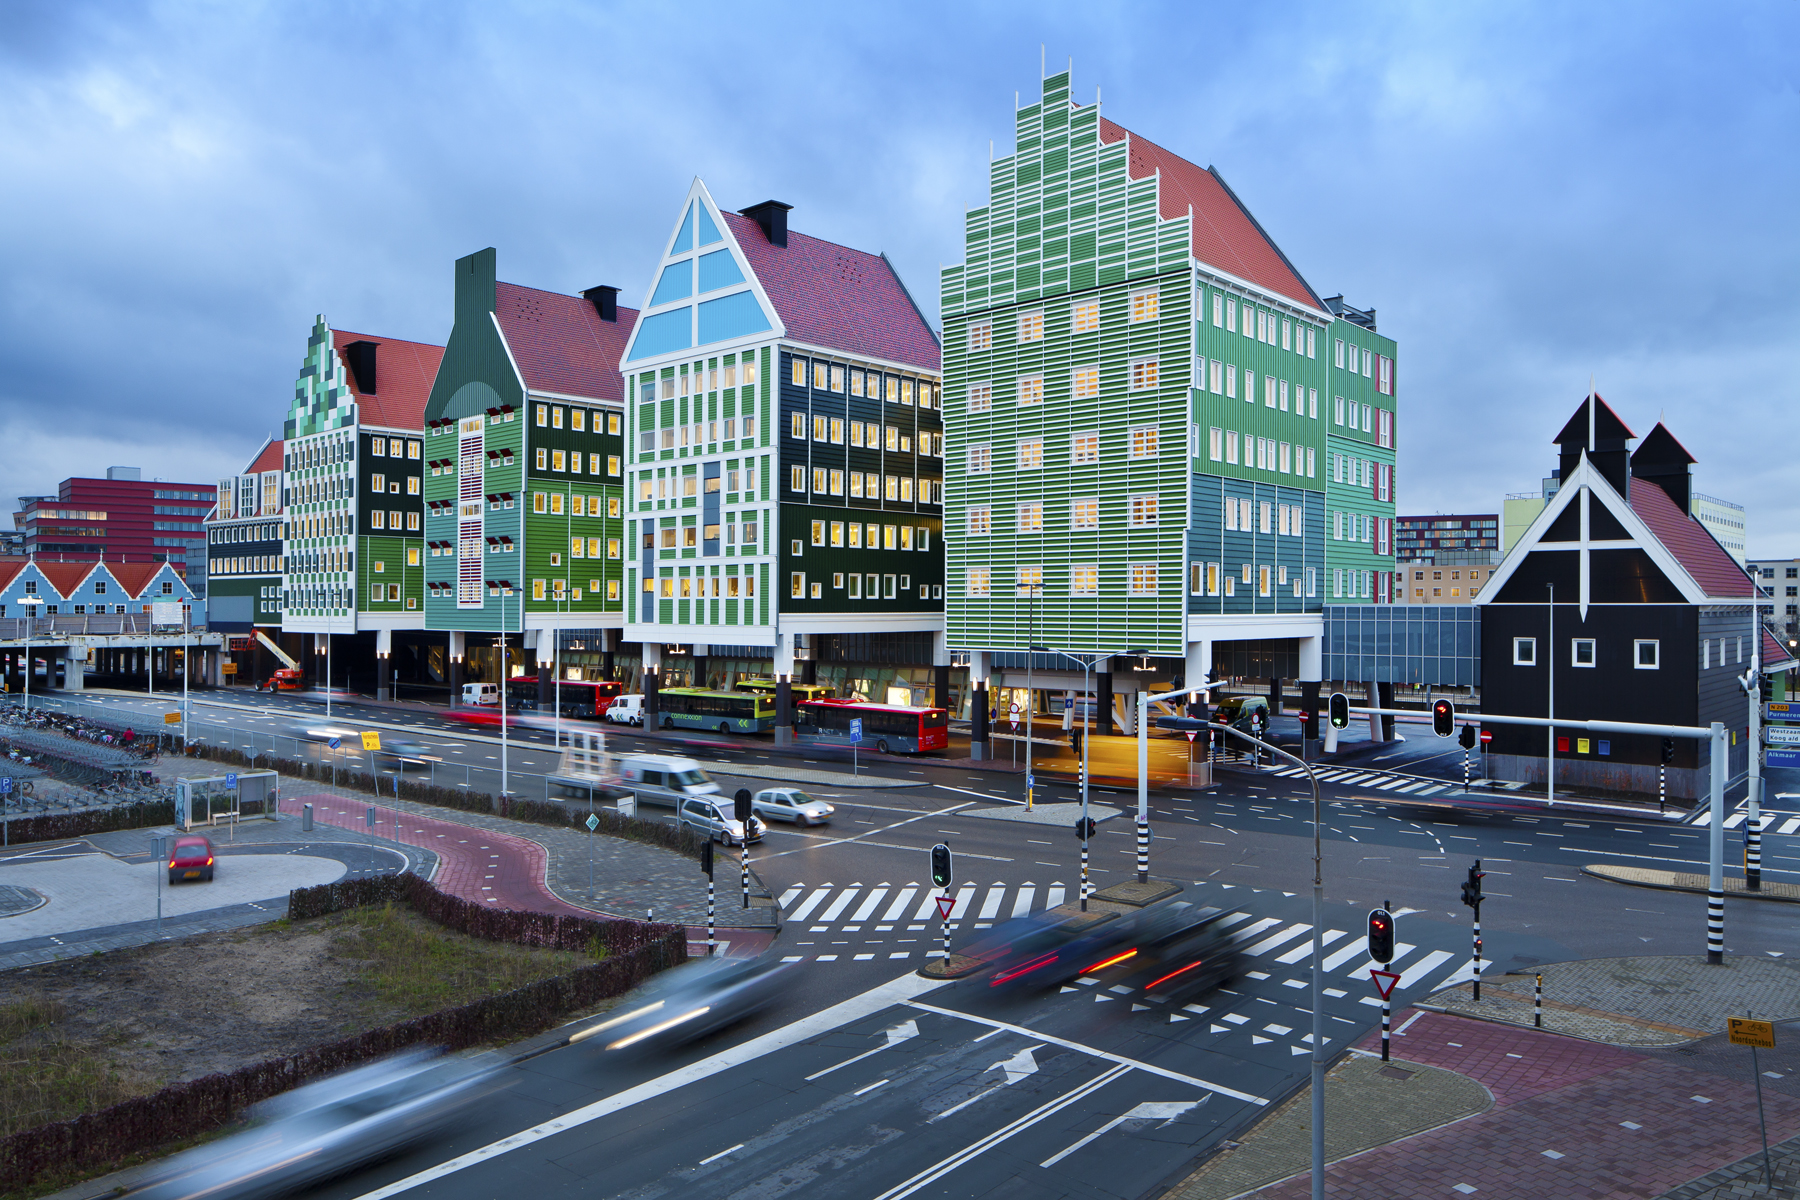 Ολλανδία: Η «παραμυθένια» πόλη που μοιάζει βγαλμένη από τον κόσμο των Lego (φωτογραφίες)